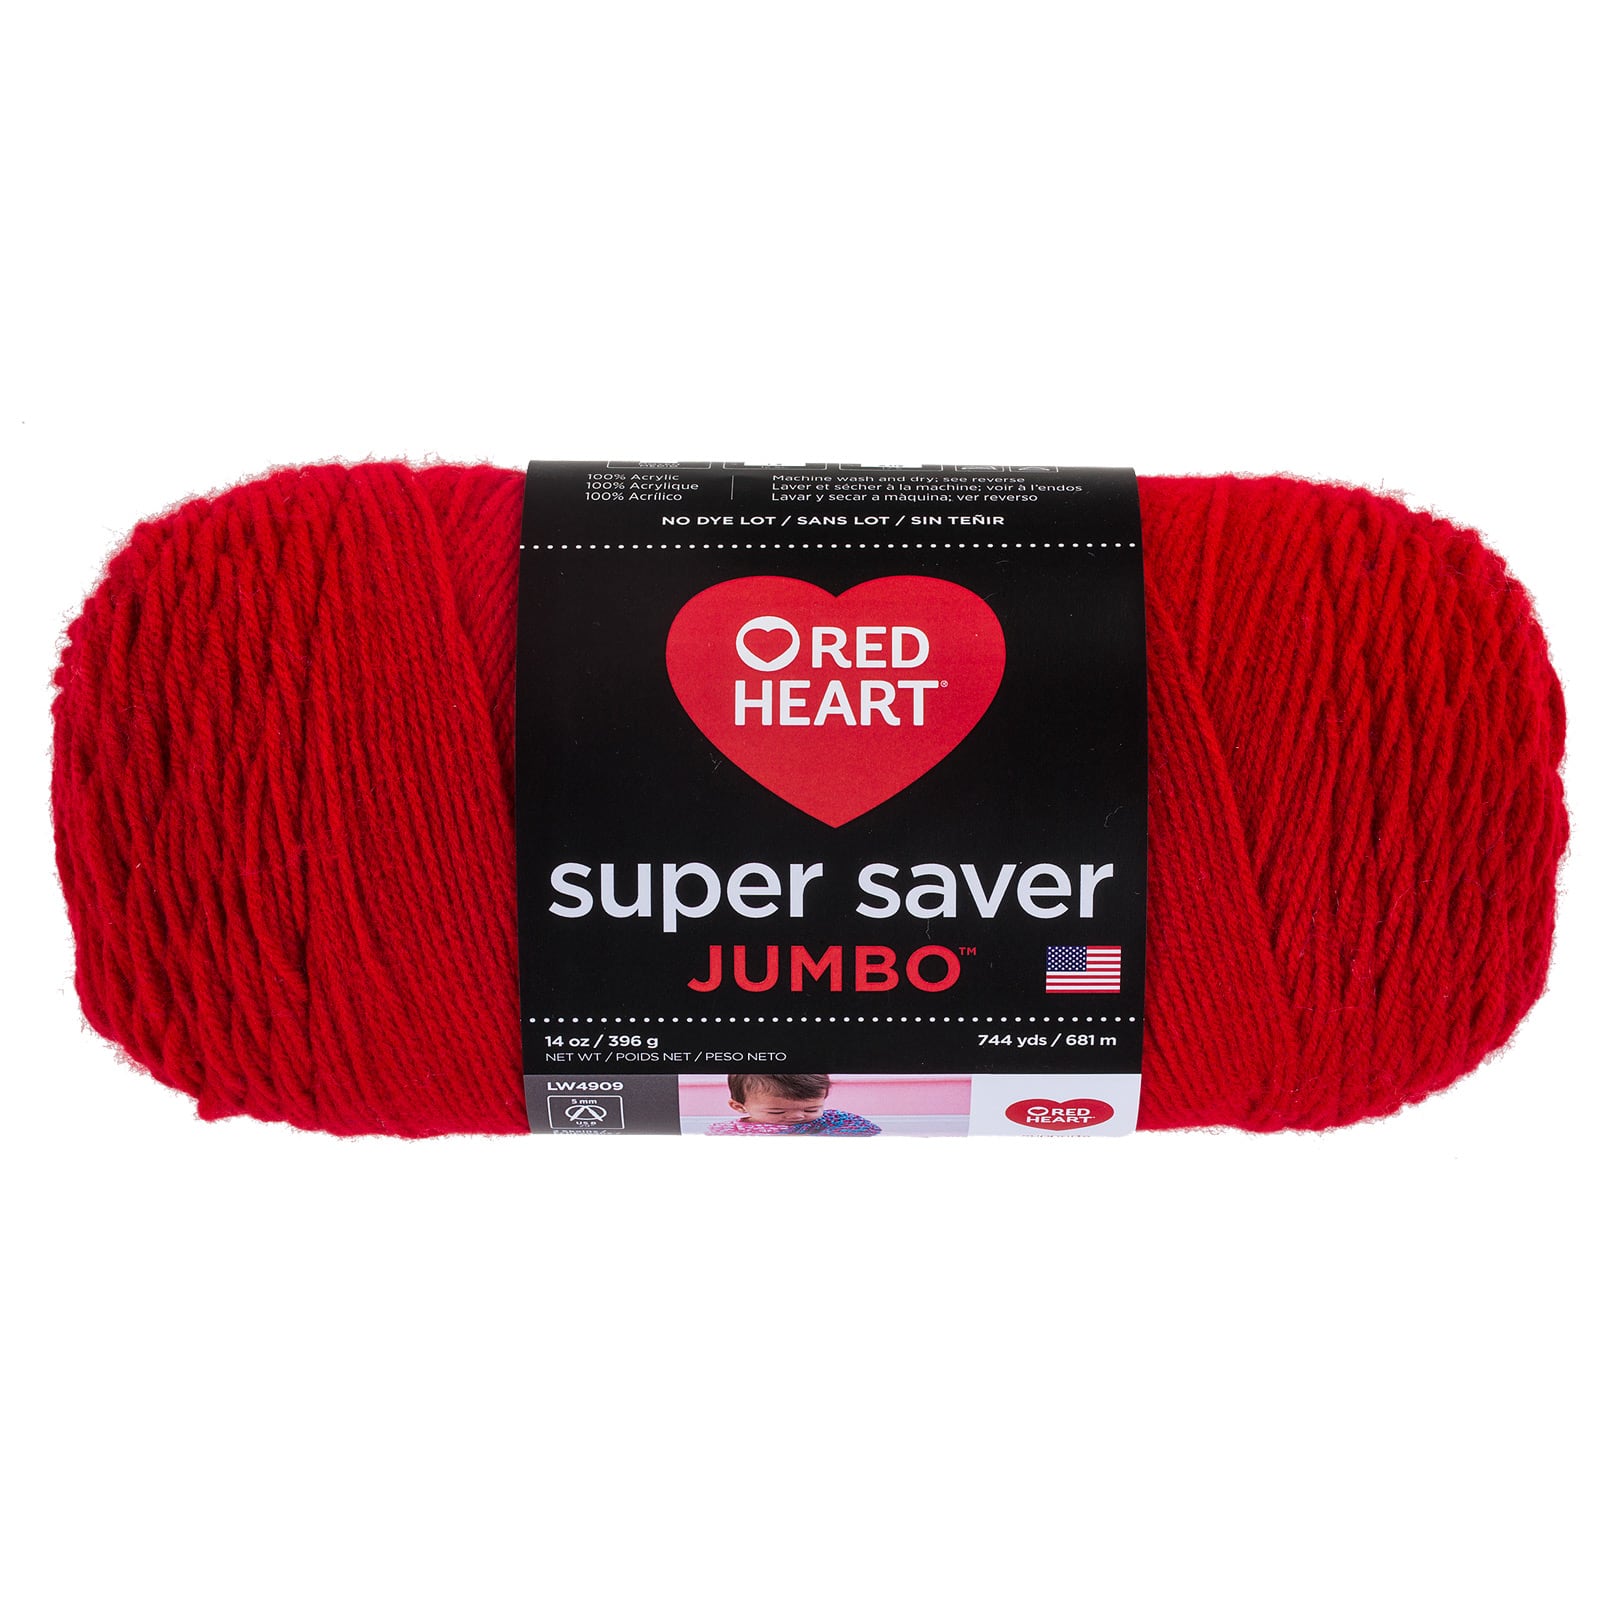 Red Heart&#xAE; Super Saver Jumbo&#x2122; Yarn